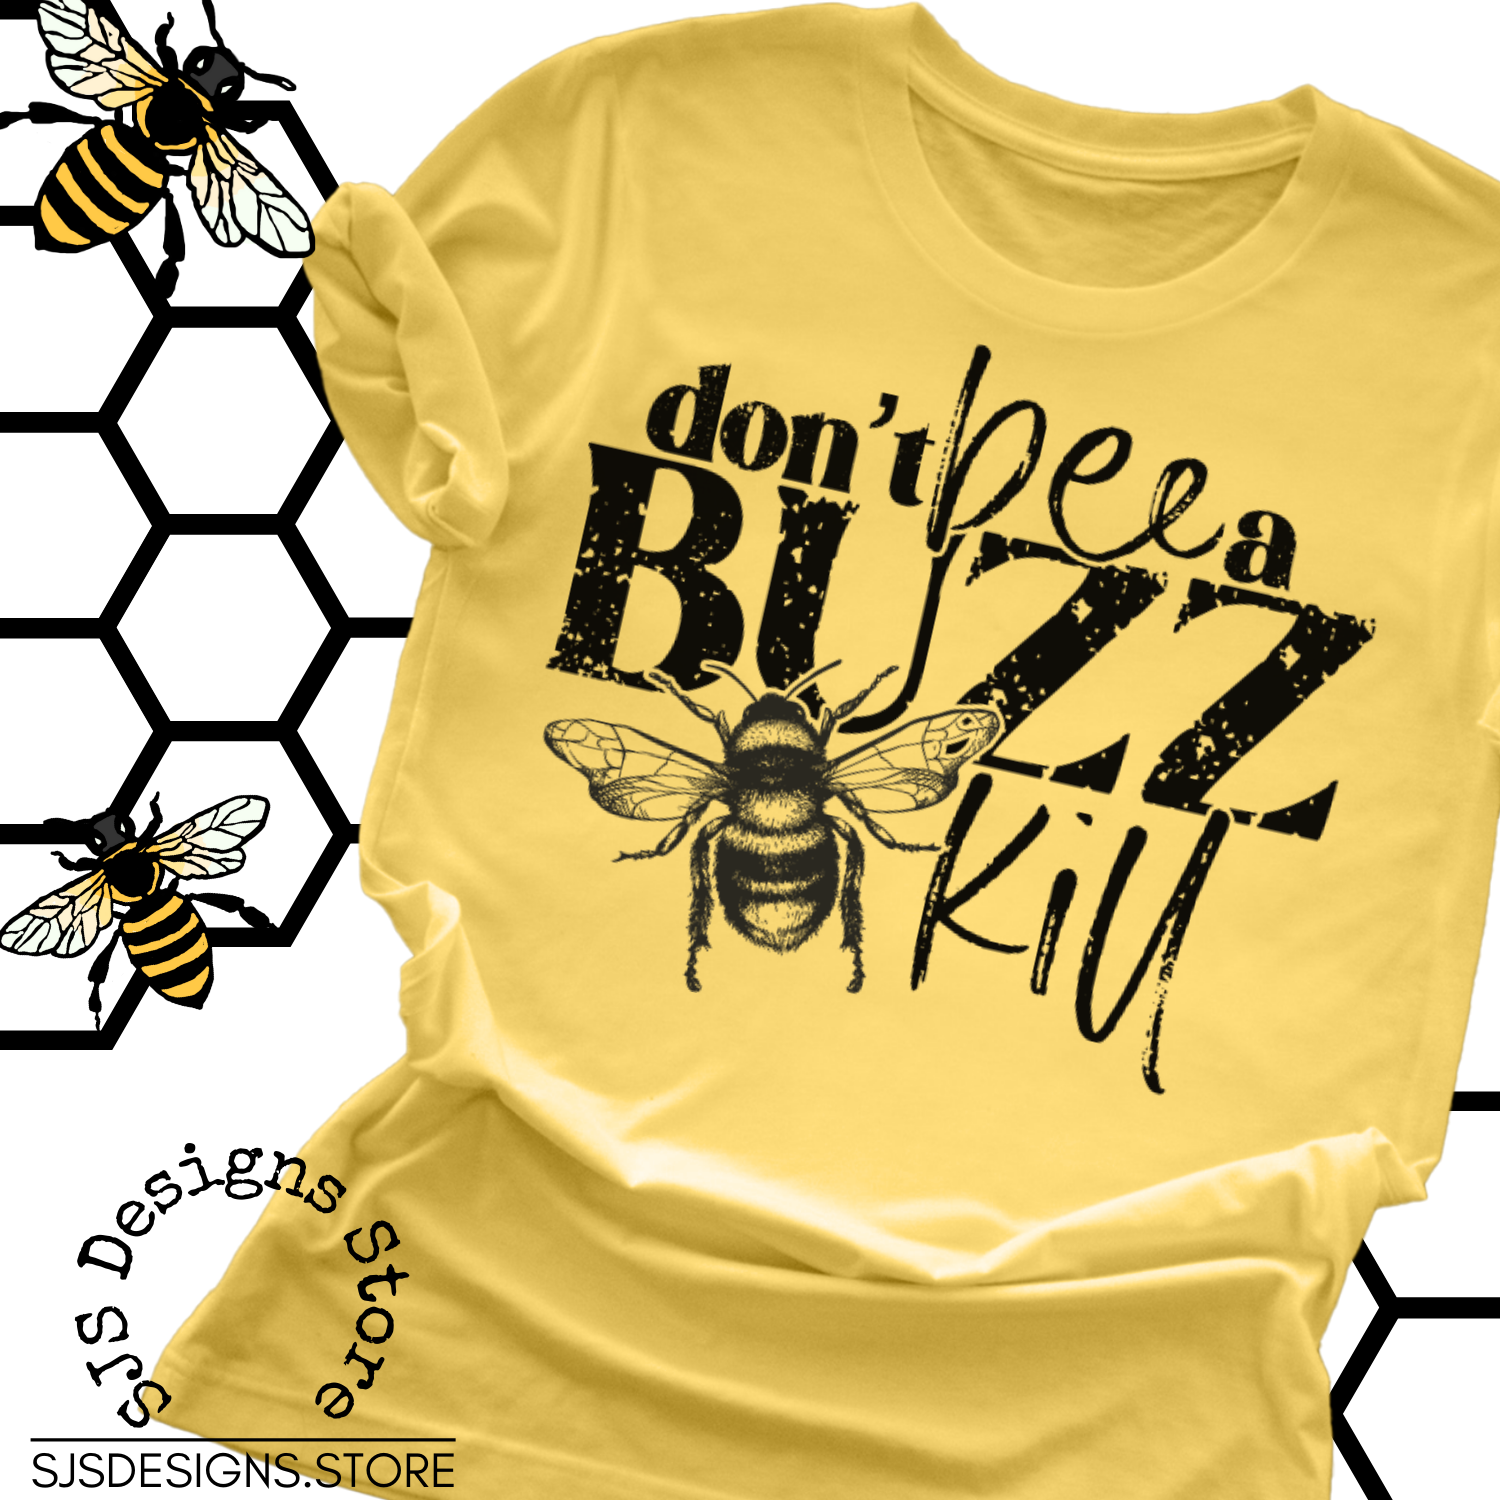 Don't Be a Buzz Kill Shirt